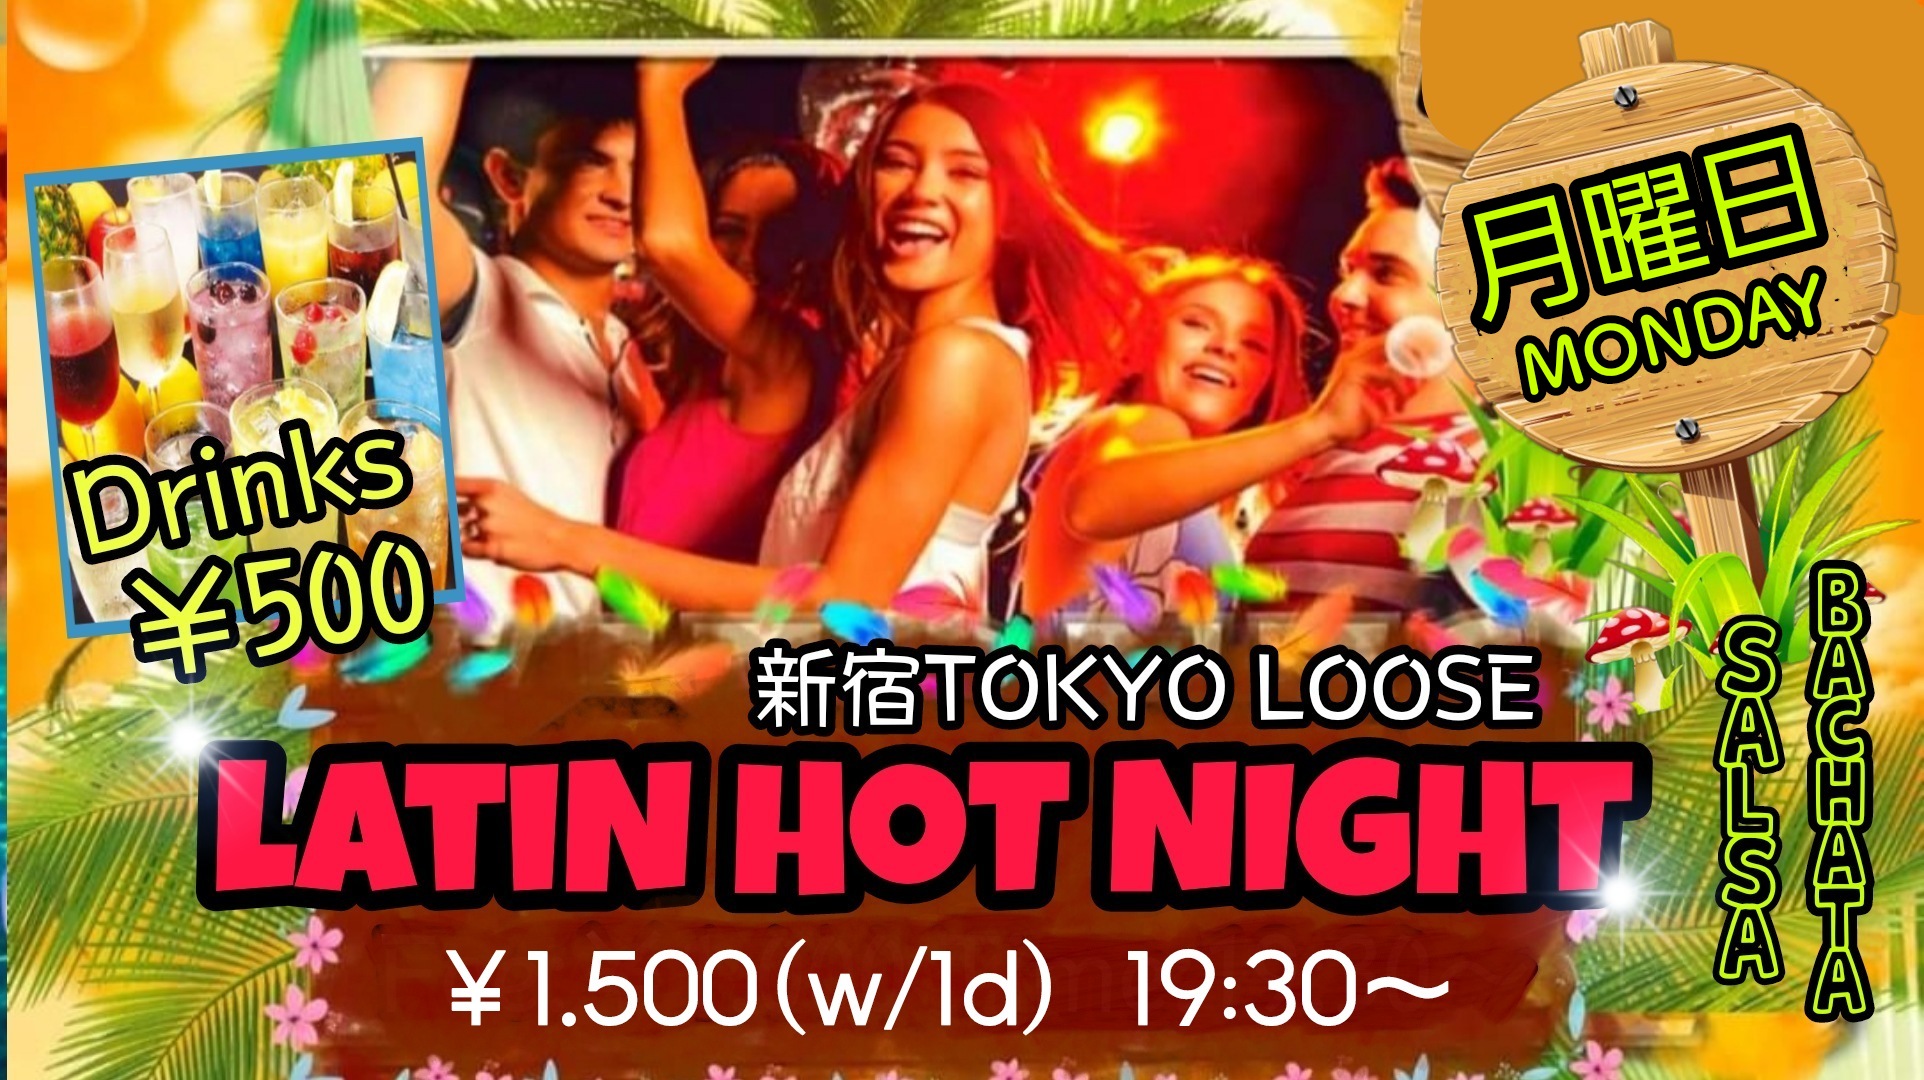 8/8(月)LATIN HOT NIGHT@新宿Tokyo Loose